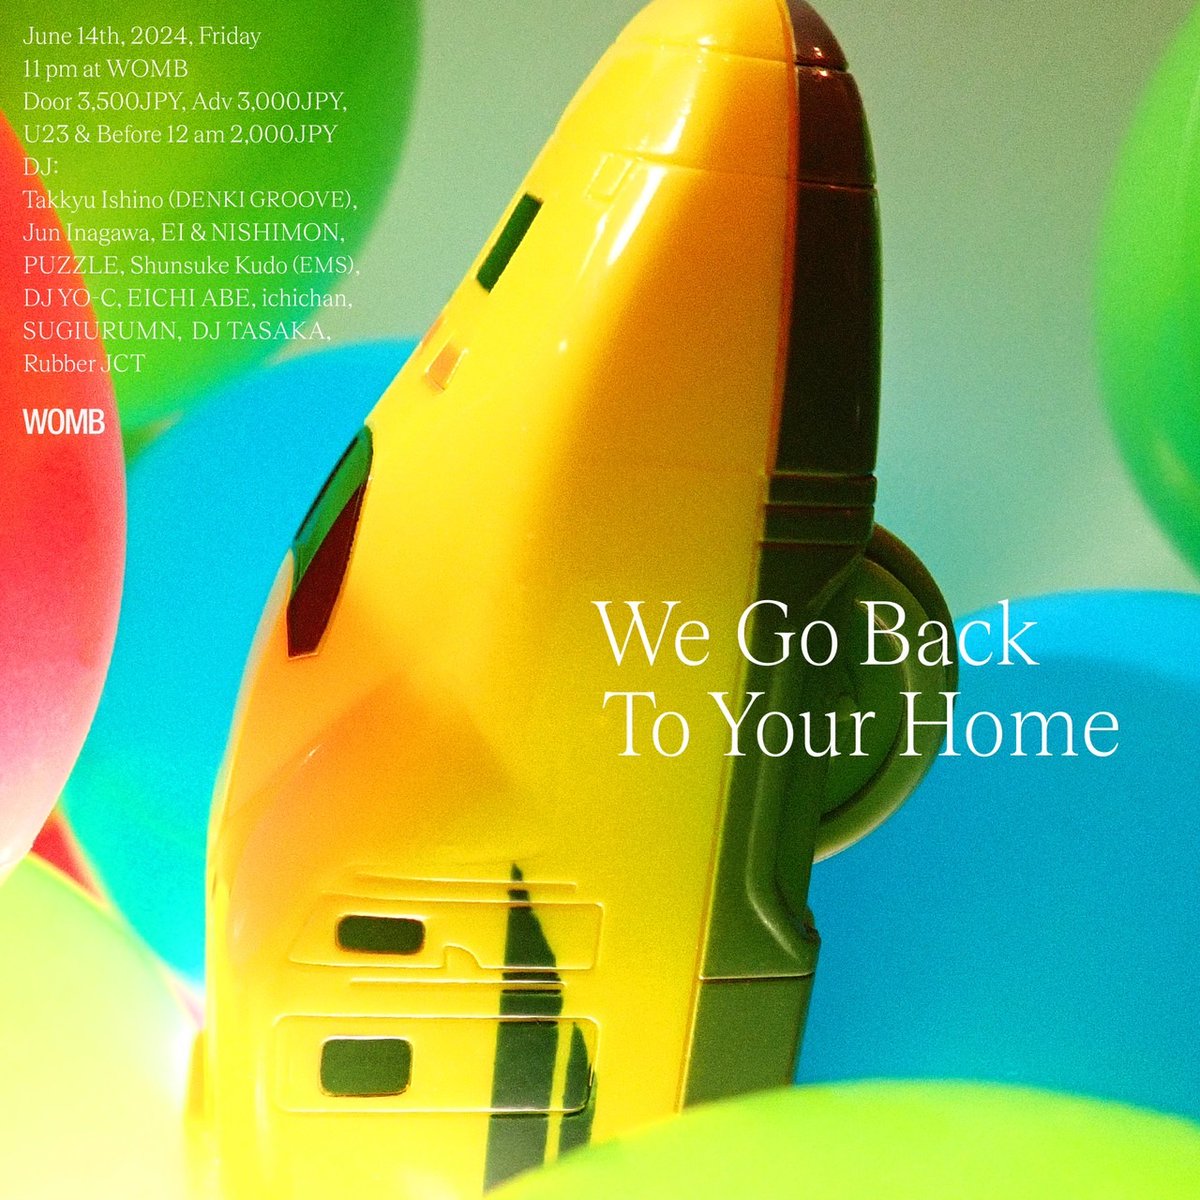 【石野卓球 / Takkyu Ishino】 DJ 2024/06/14(Fri.) We Go Back To Your Home at WOMB, Tokyo OPEN 23:00 womb.co.jp